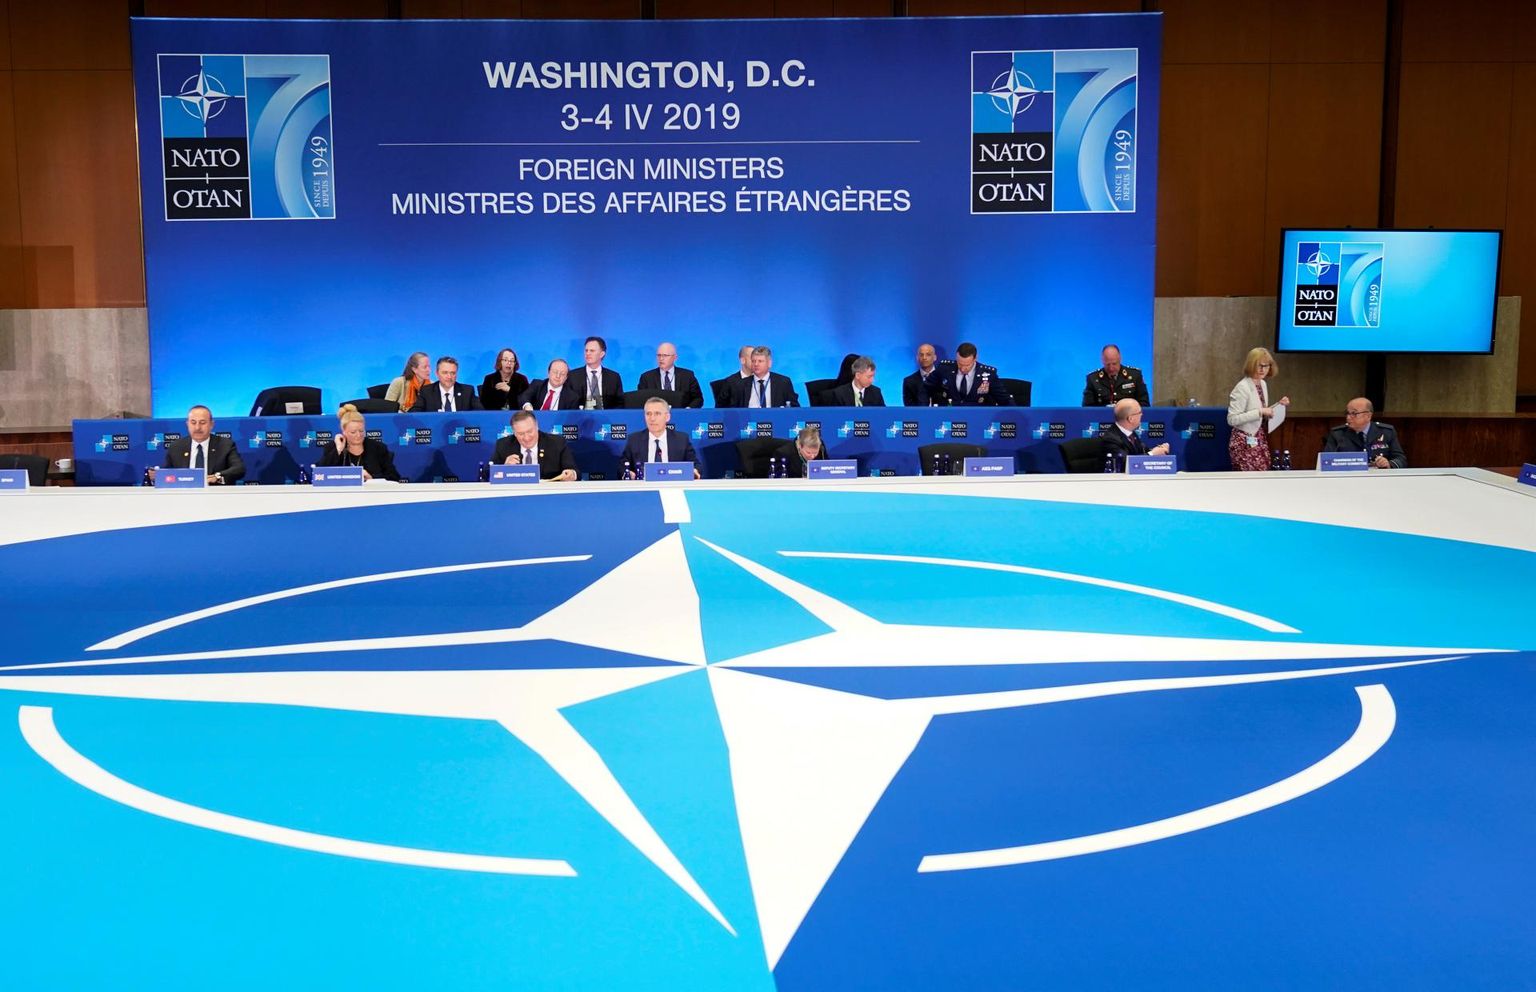 NATO riikide välisministrid kohtusid aprilli algul Washingtonis, et väljendada alliansi kindlat soovi seista vastu mistahes uutele ohtudele.